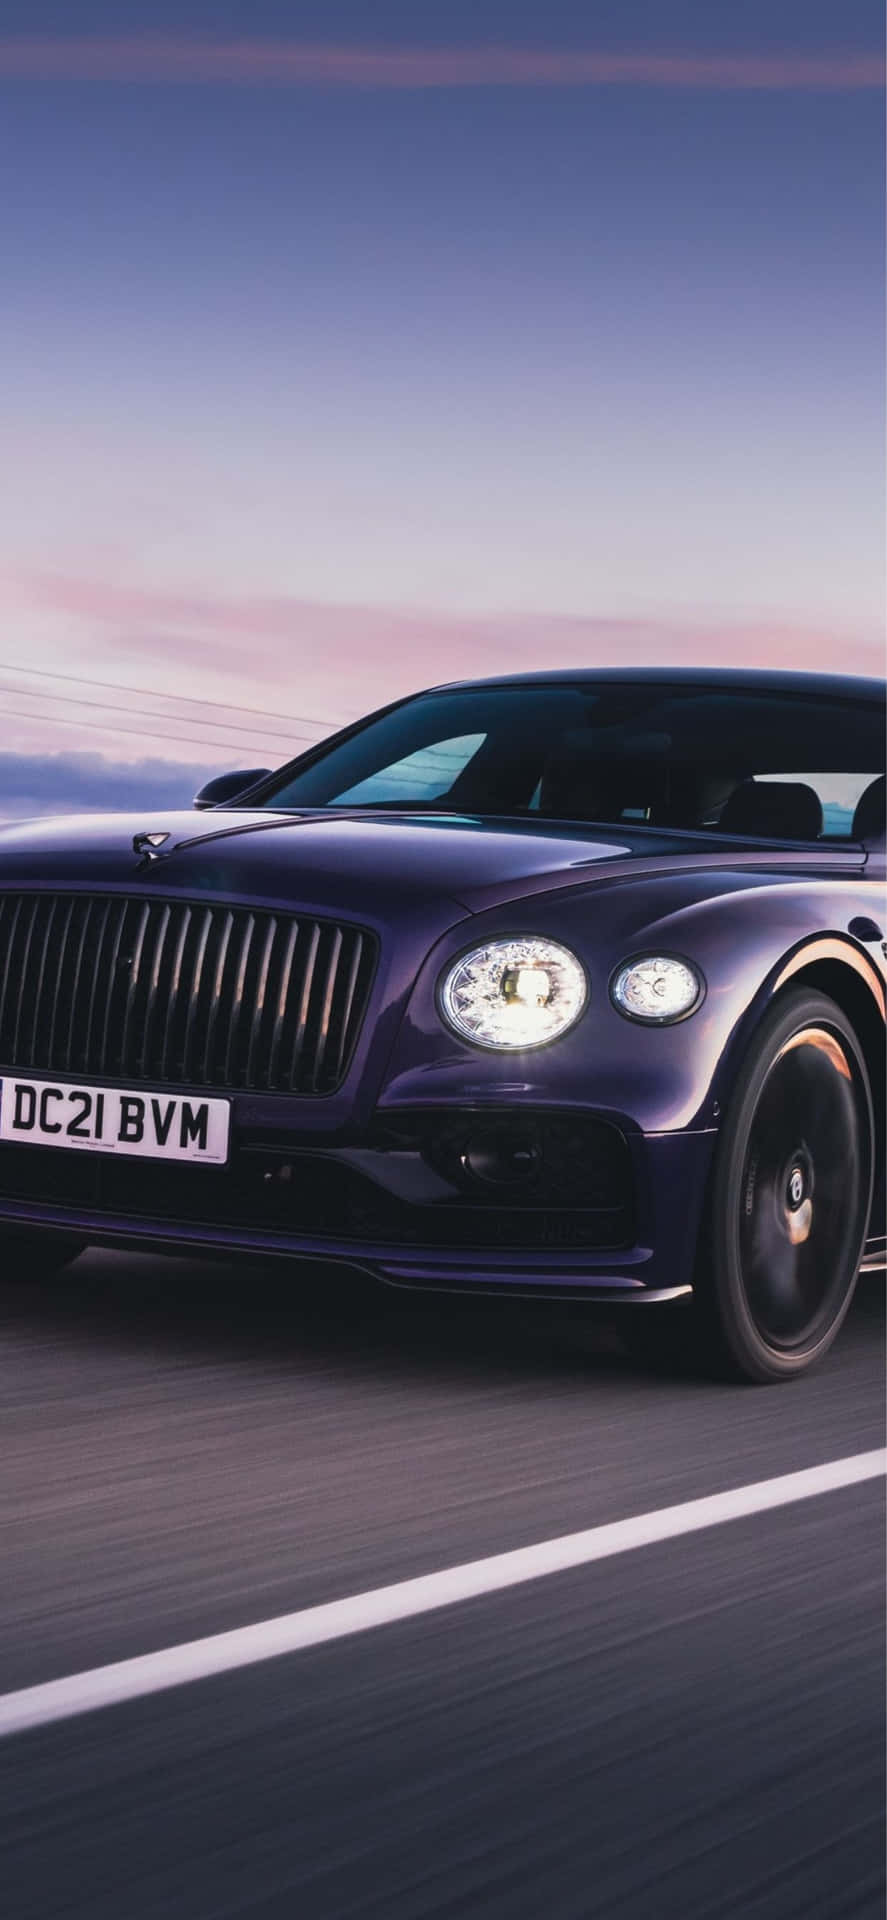 Cảm nhận sự mạnh mẽ và đẳng cấp thông qua hình ảnh nền xe hơi độc đáo của hãng Bentley. Từ hình ảnh chi tiết đến những mẫu xe mới nhất, bạn sẽ có được một phiên bản trình bày tuyệt vời để thể hiện đẳng cấp của bạn trên điện thoại hoặc máy tính.